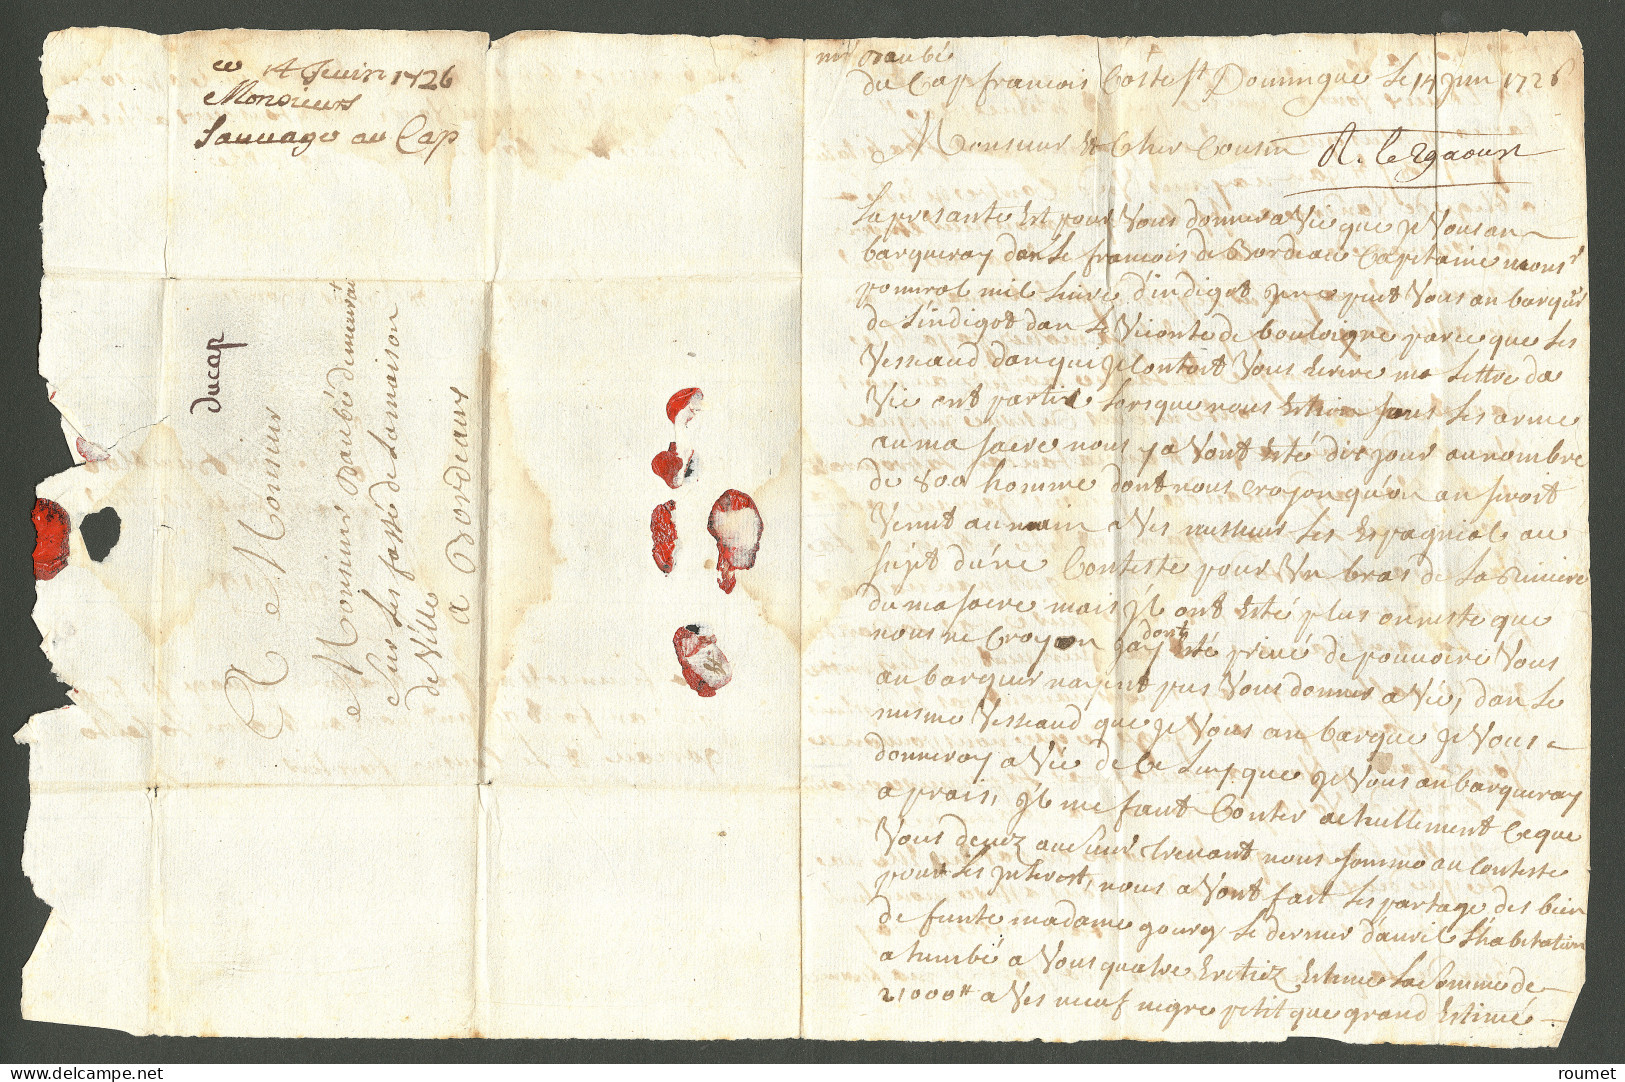 Lettre Du Cap (Jamet N°2). Lettre Avec Texte Daté Du Cap Français Coste St Domingue Le 14 Juin 1726 Pour TB. - Haití